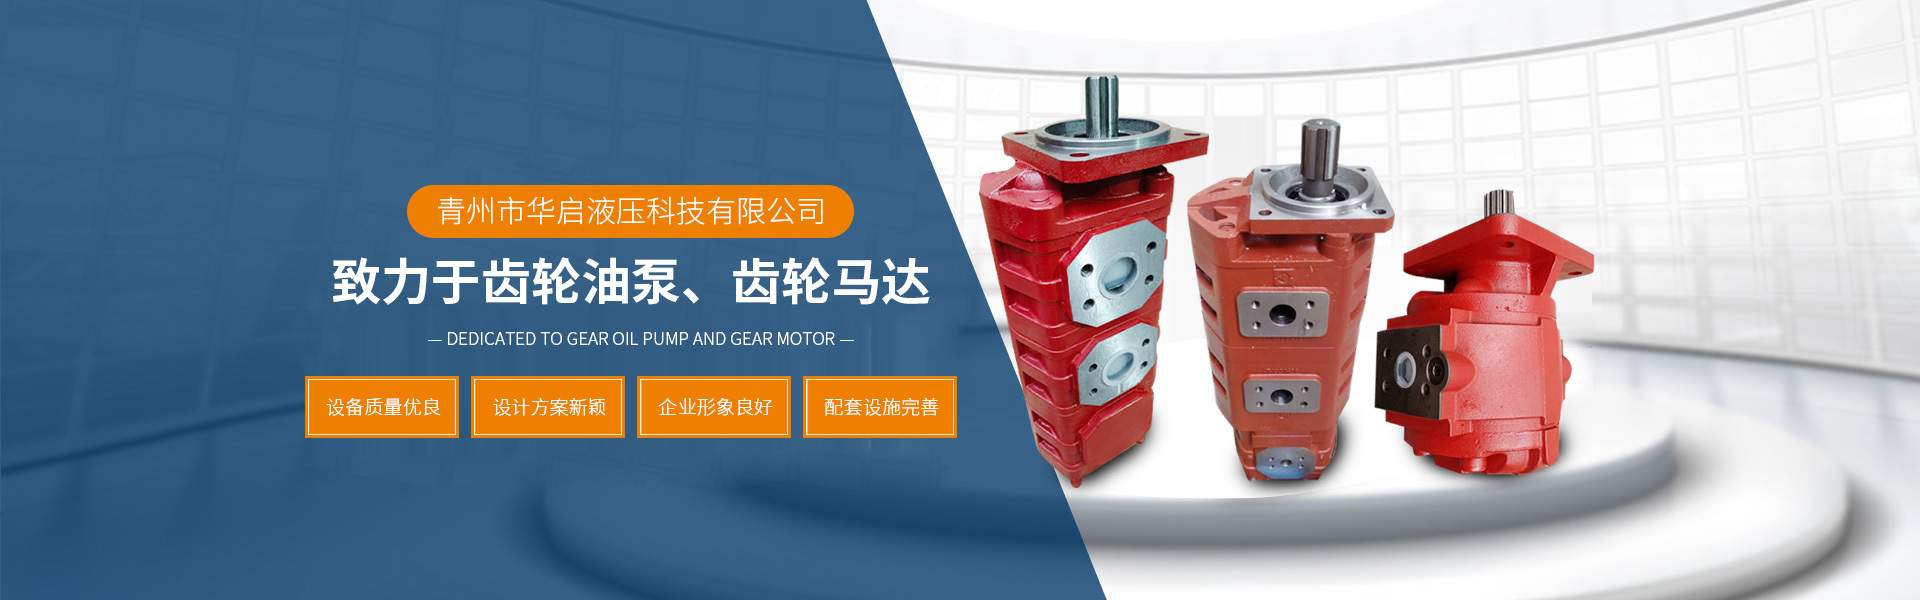 齿轮油泵和齿轮马达的生产企业 - 青州市华启液压科技有限公司